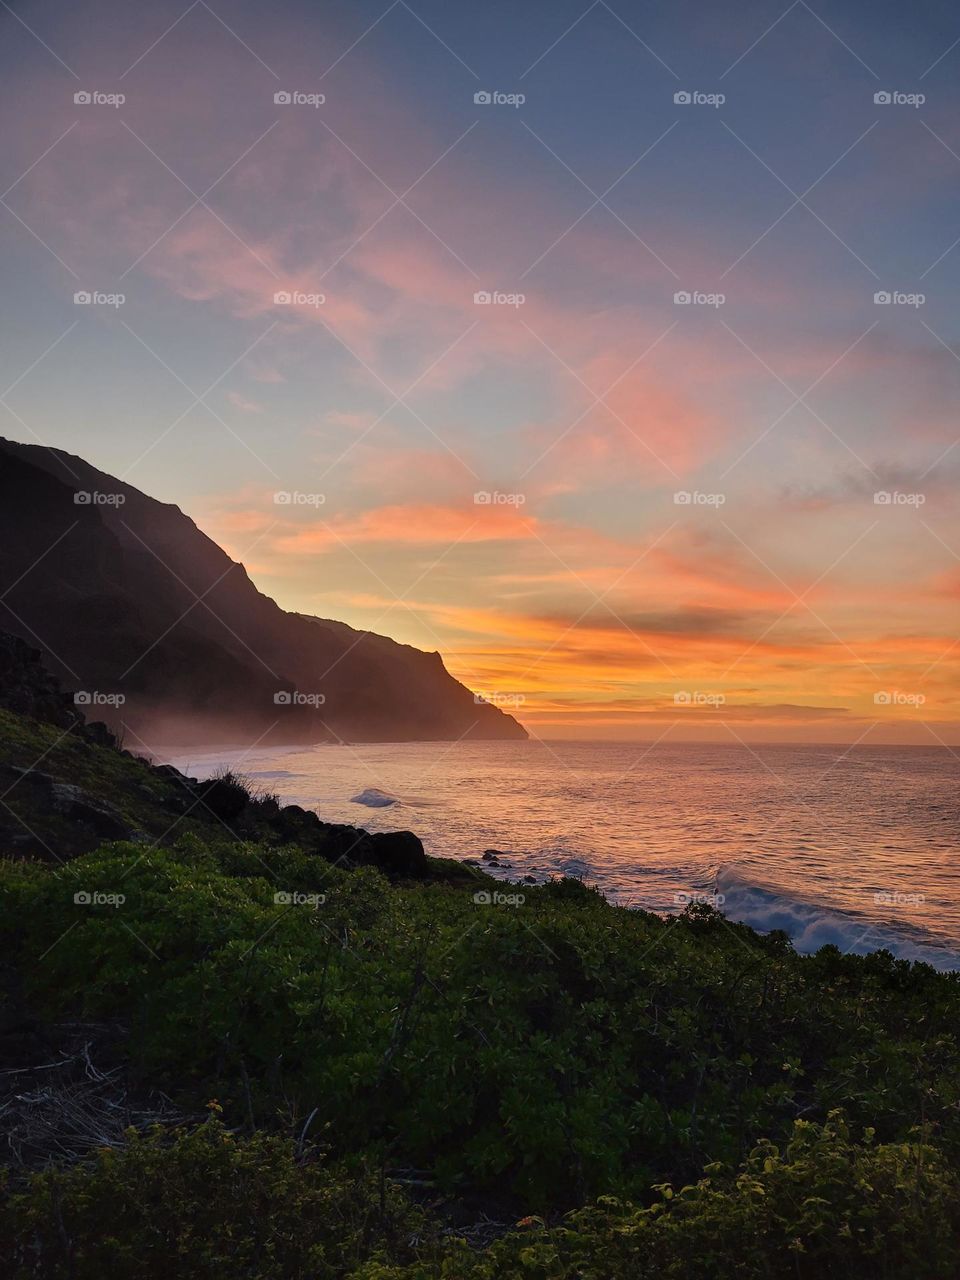 sunset in kauai